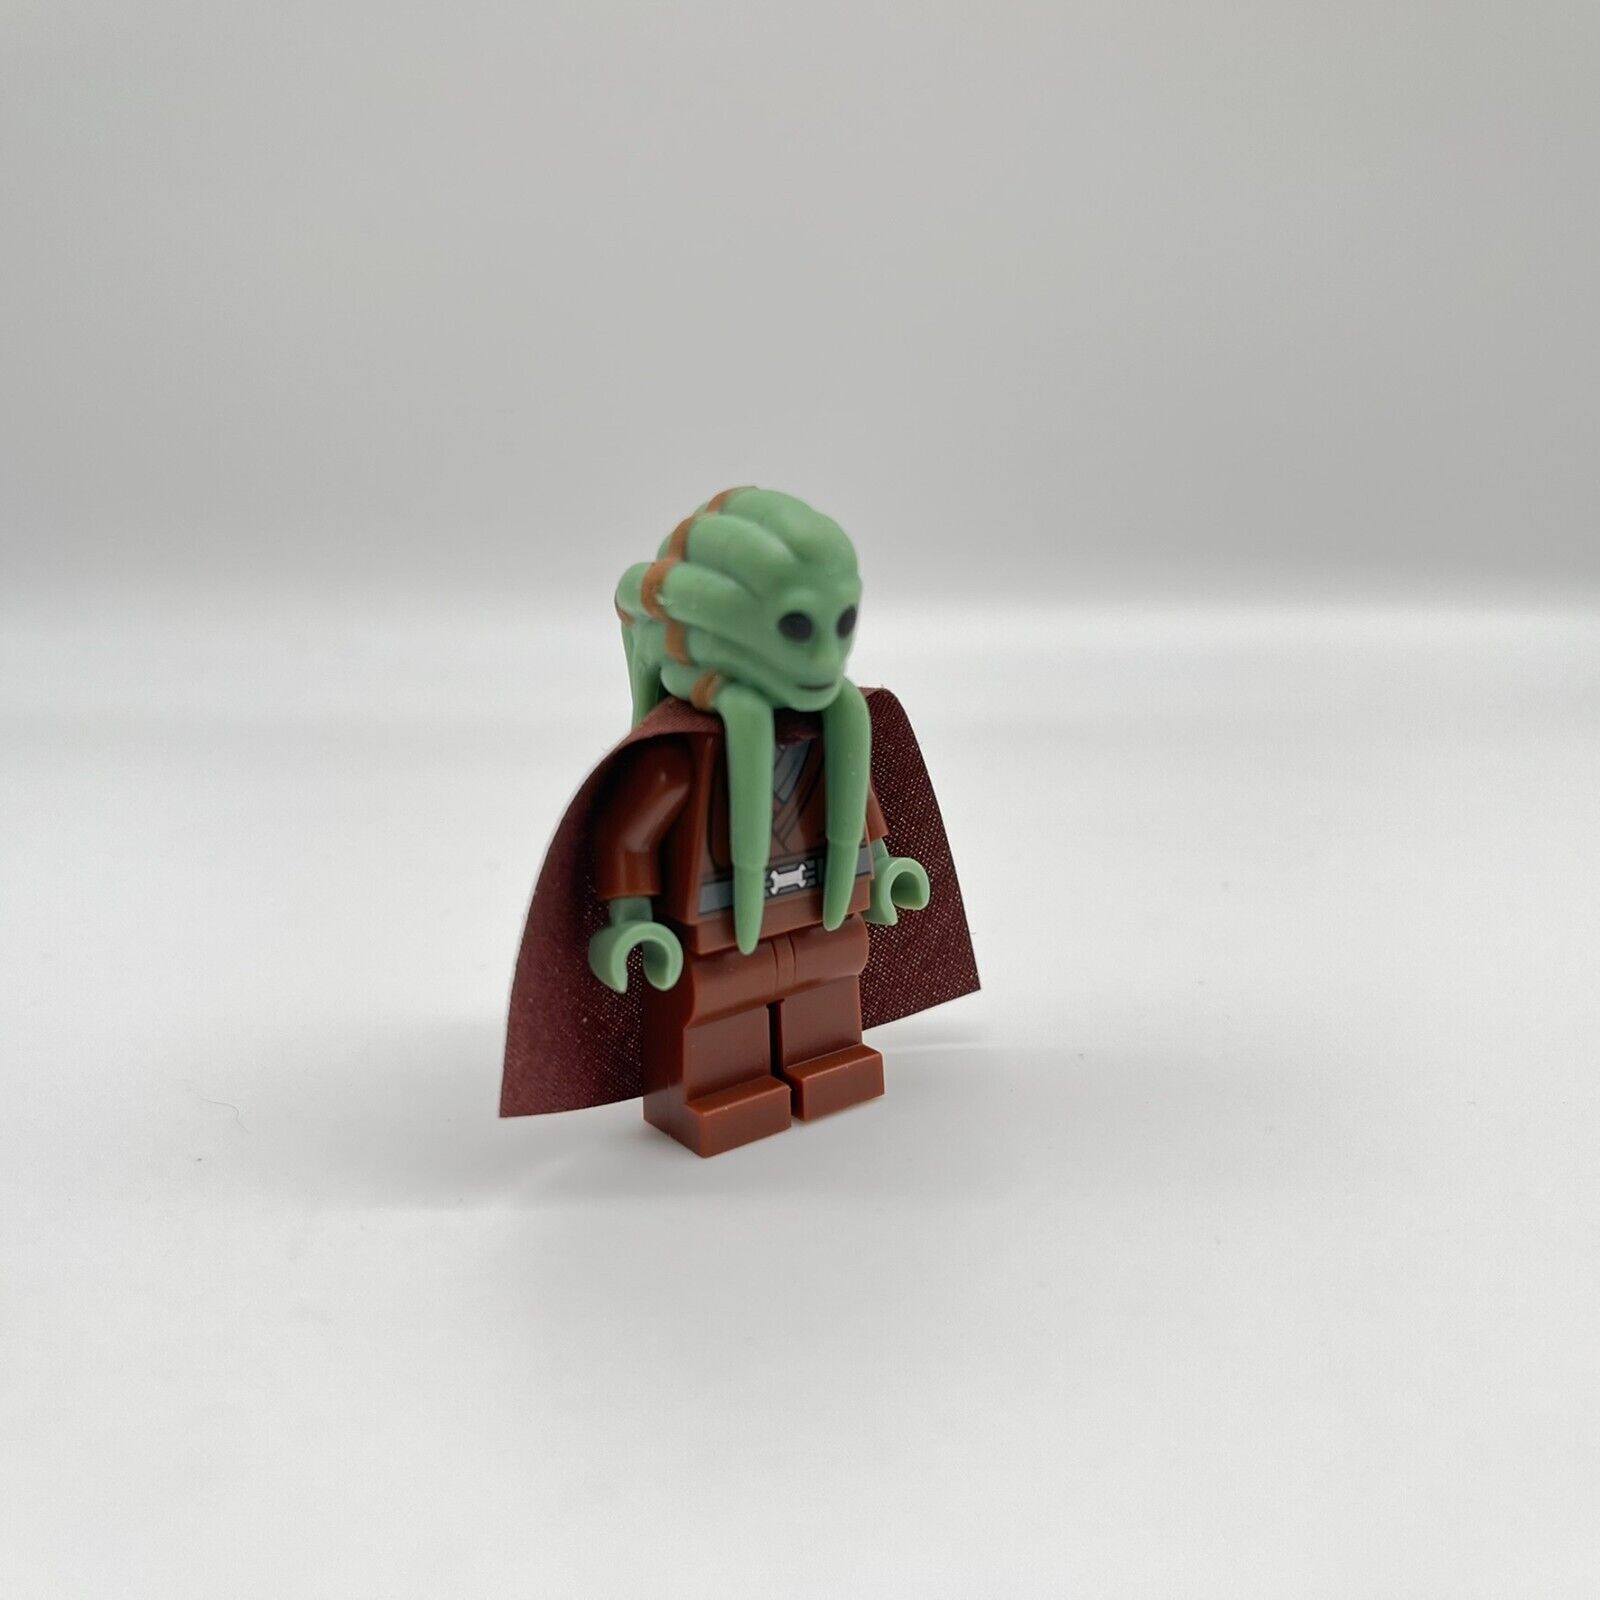 LEGO Star Wars Kit Fisto with Cape sw0422 NEU Sammlerzustand Figur aus 9526